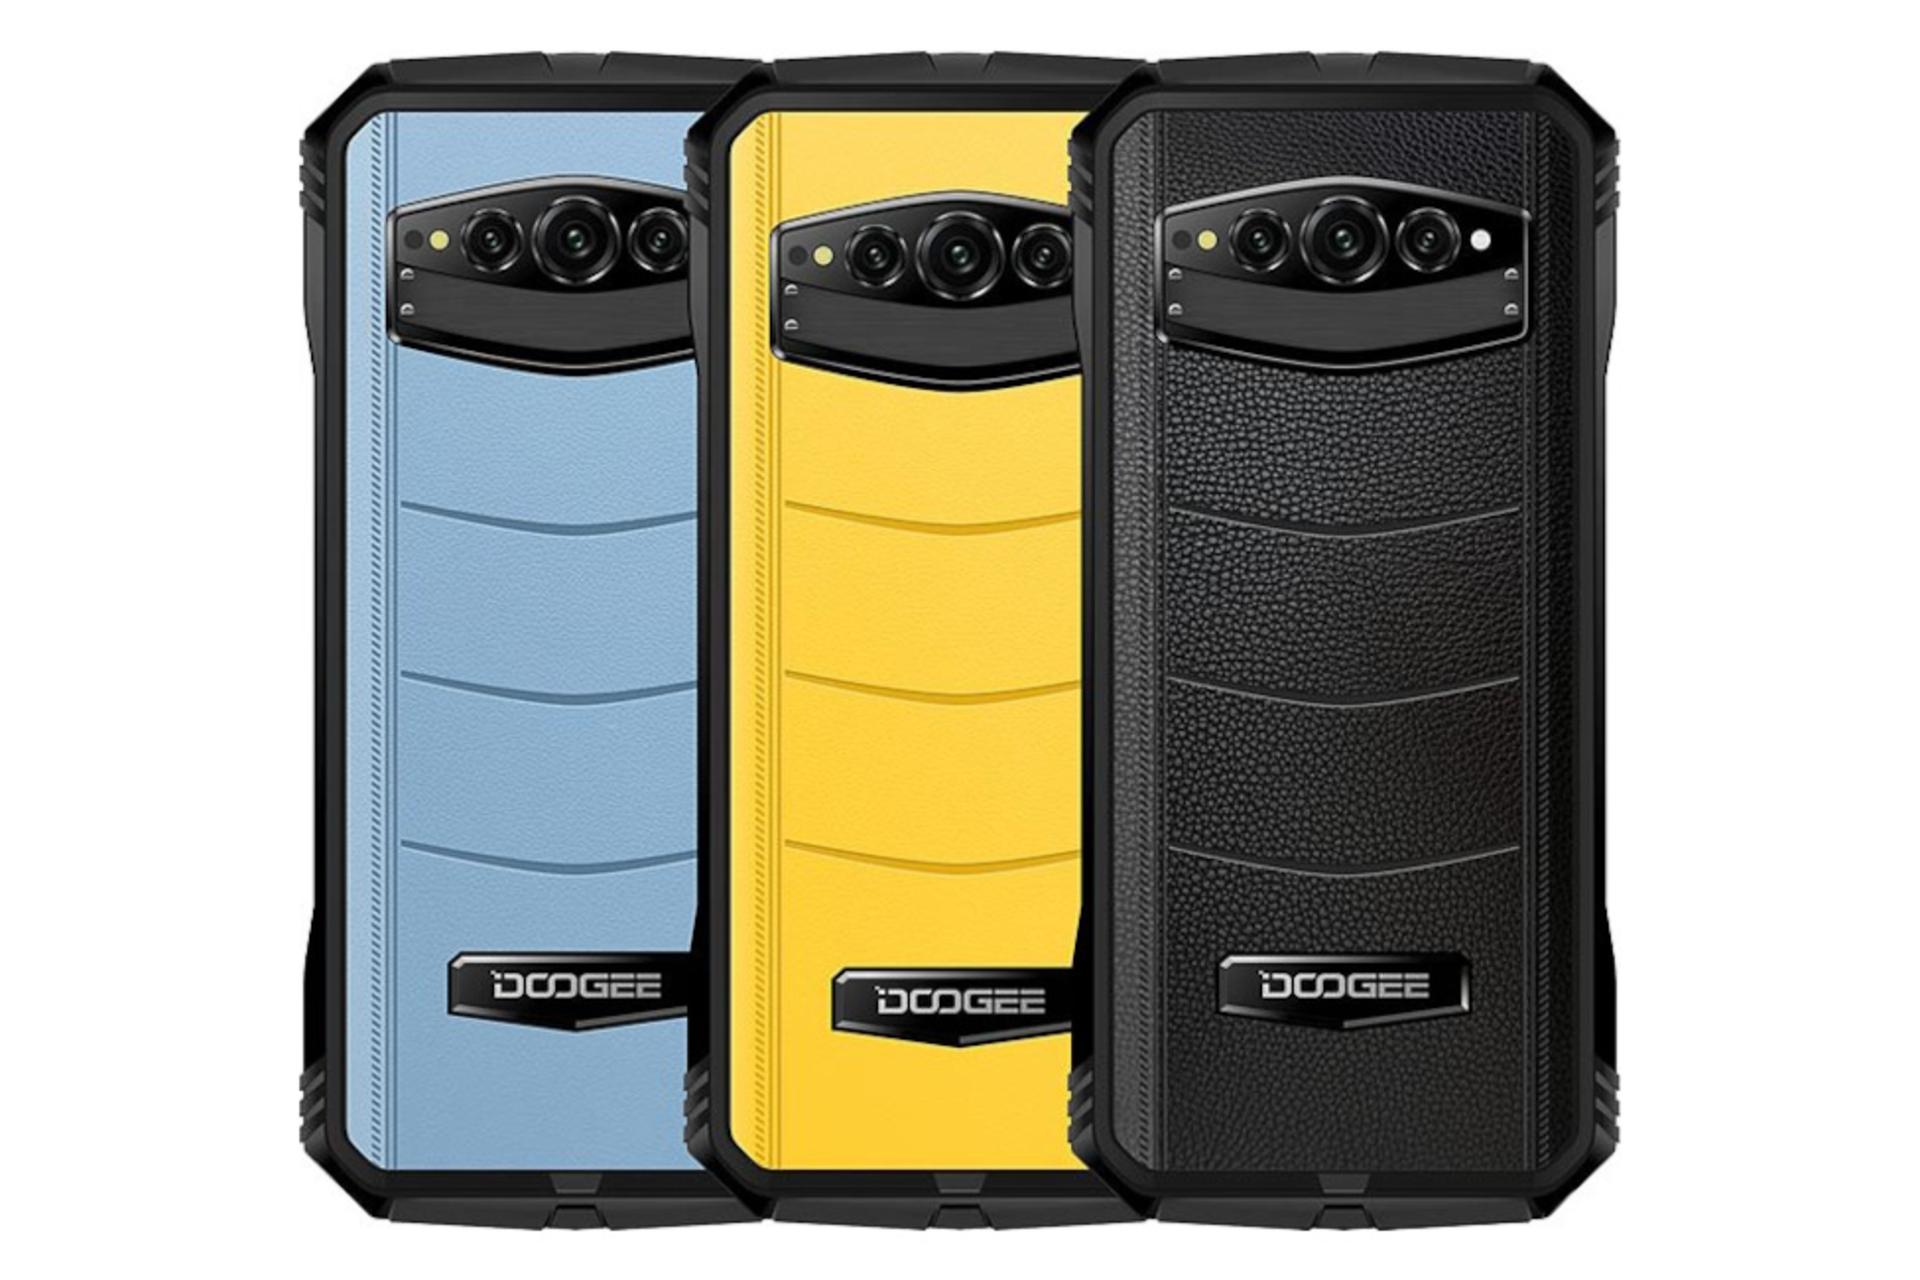 رنگ های مختلف گوشی موبایل S100 پرو دوجی / Doogee S100 Pro